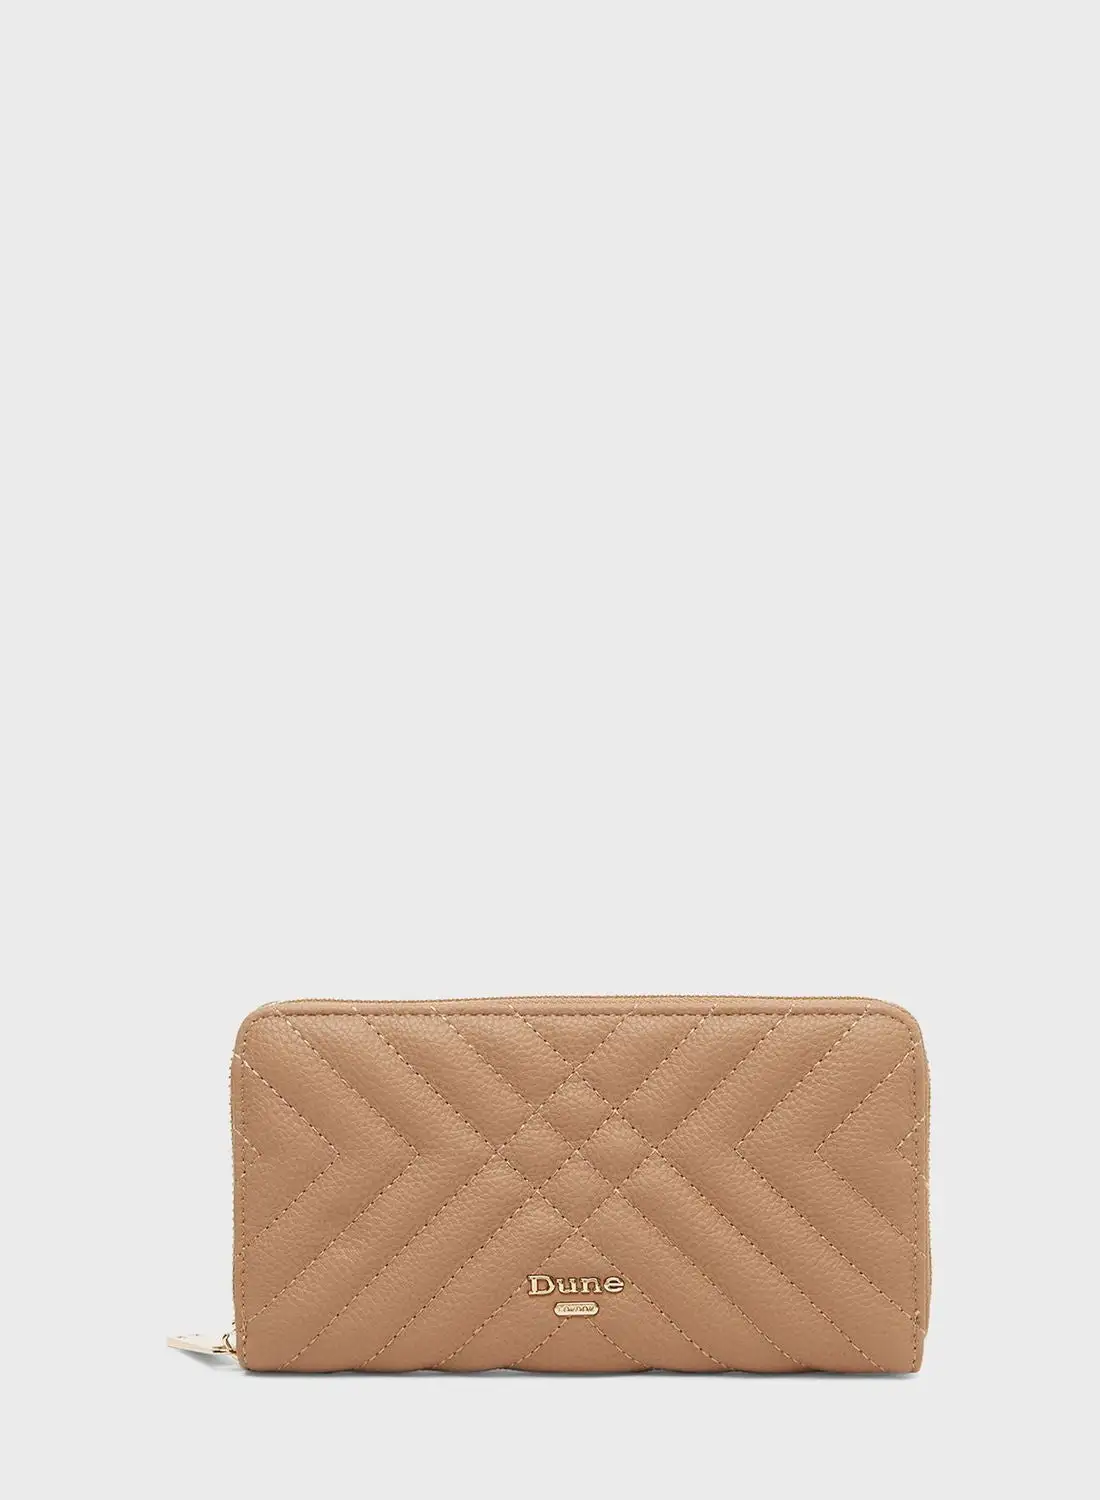 Dune LONDON Quilted Zip Wallet